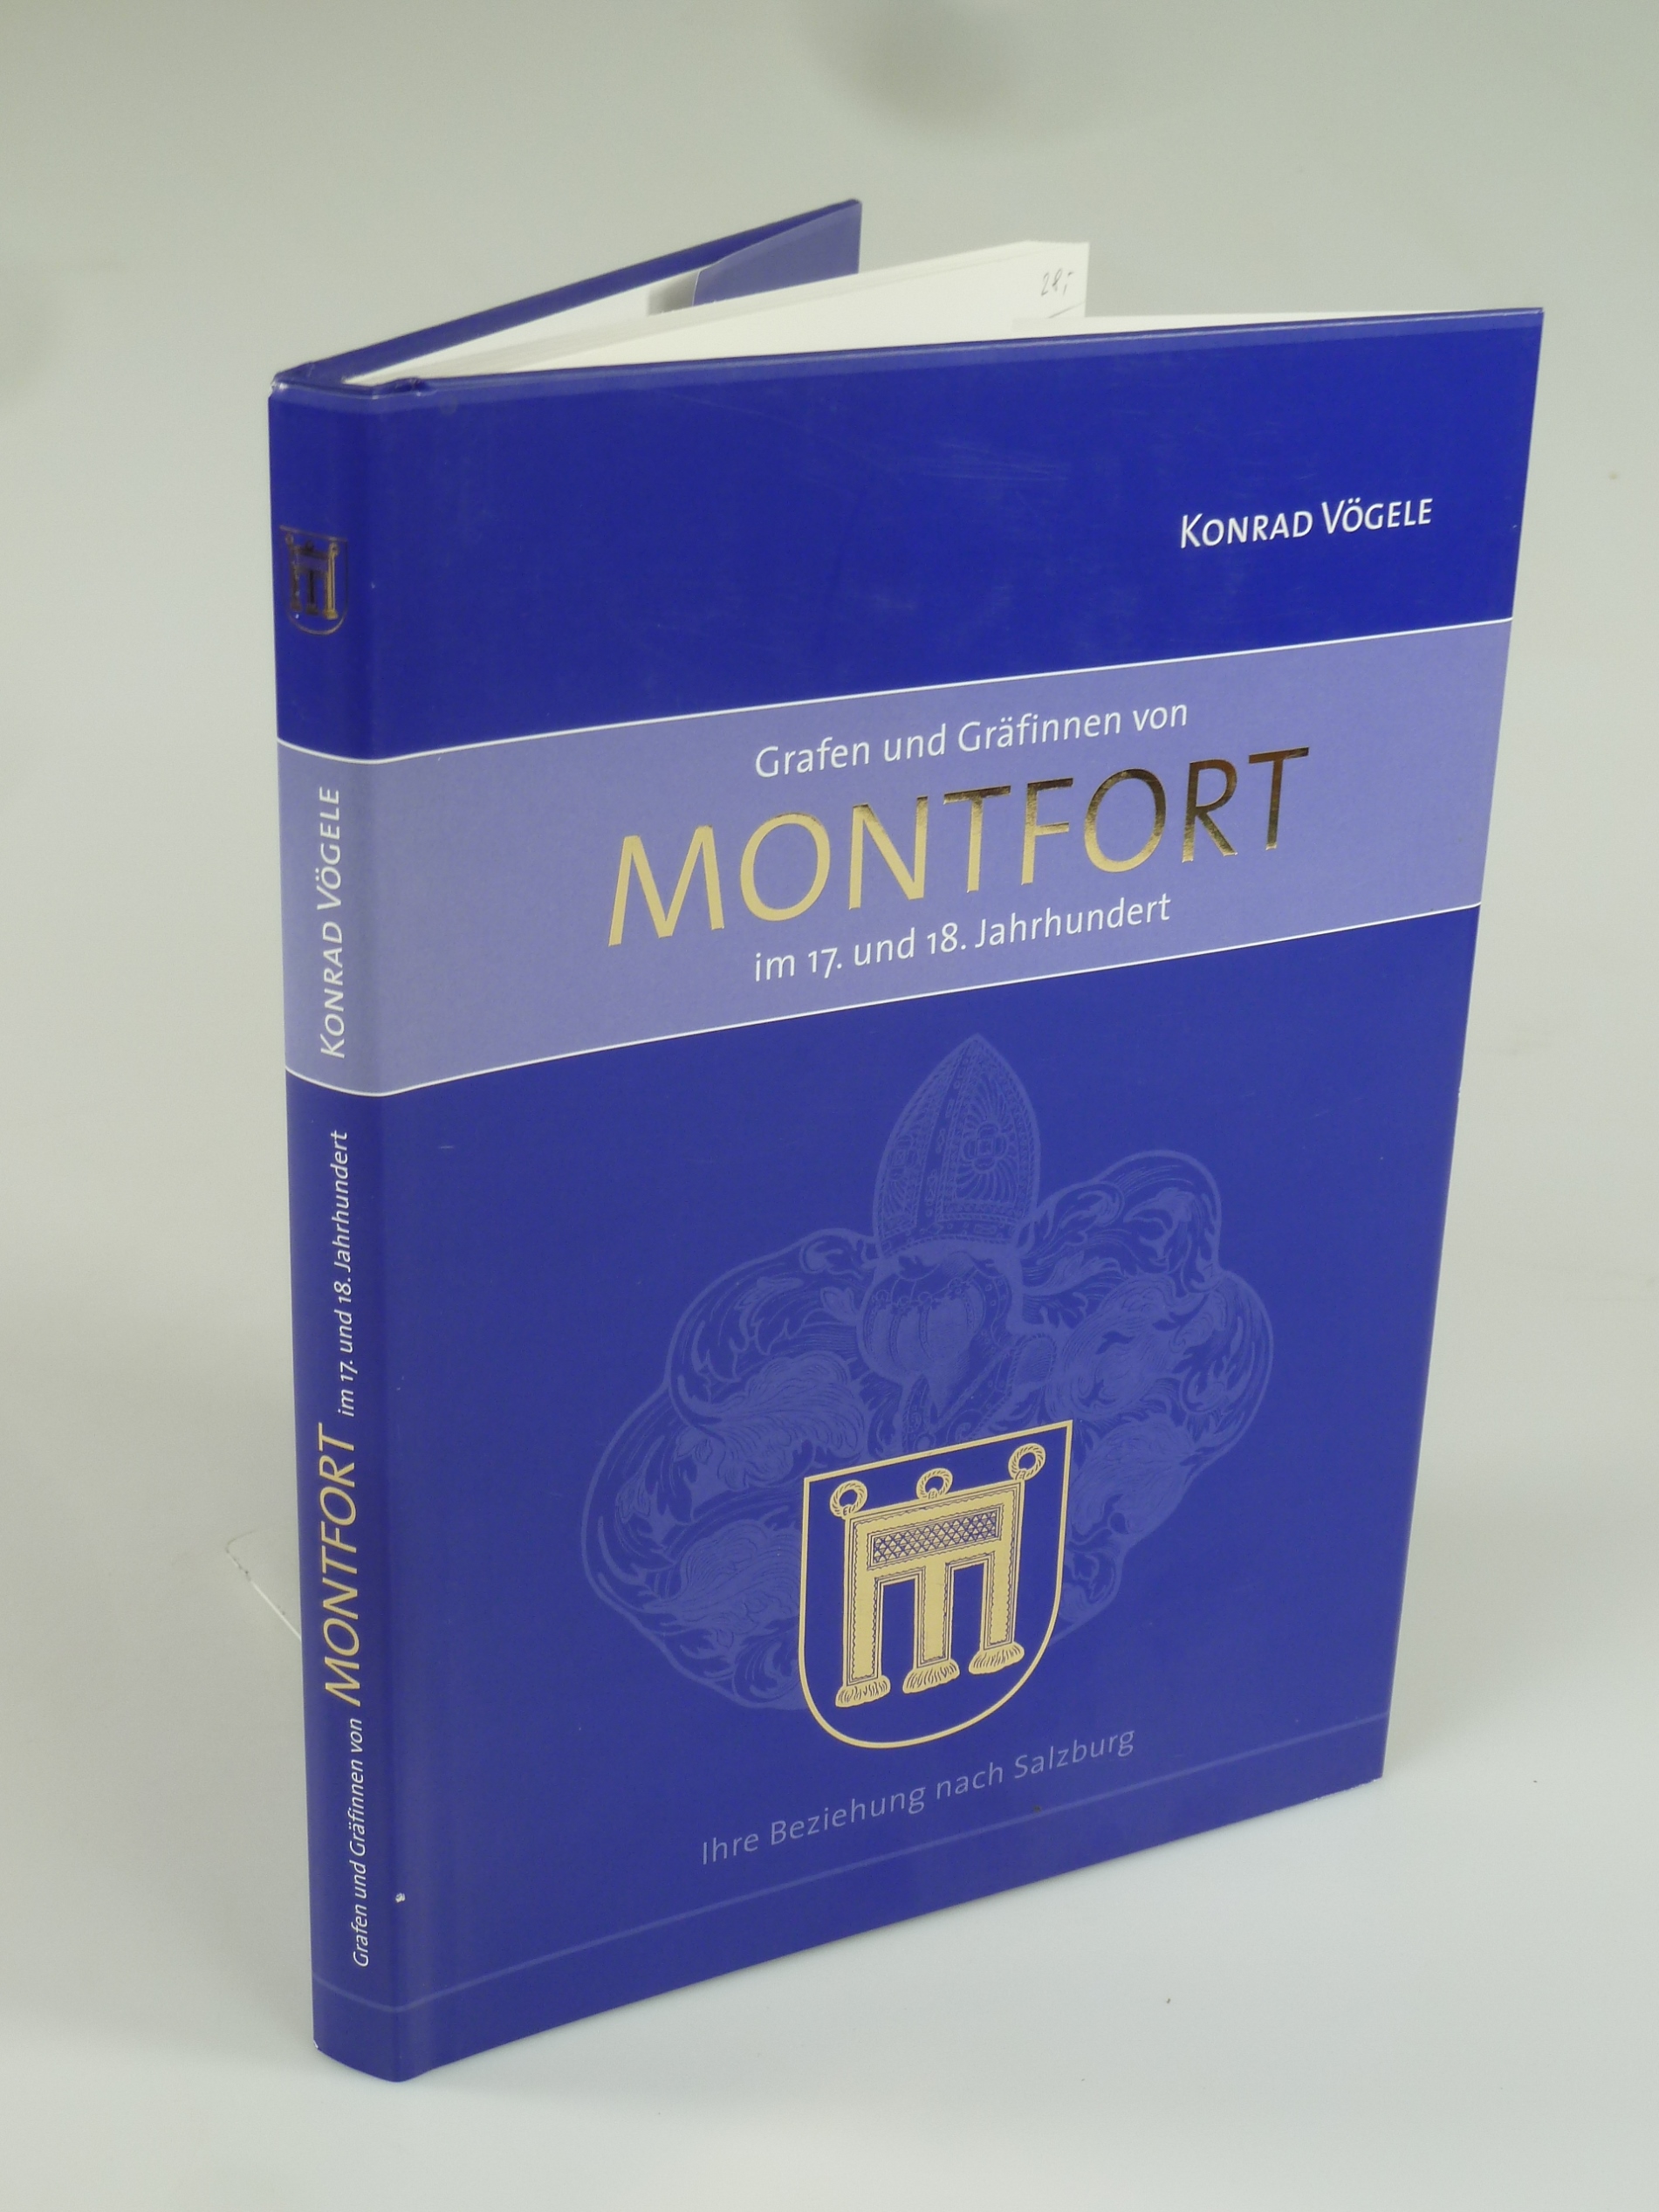 Grafen und Gräfinnen von Montfort im 17. und 18. Jahrhundert. - VÖGELE, Konrad.